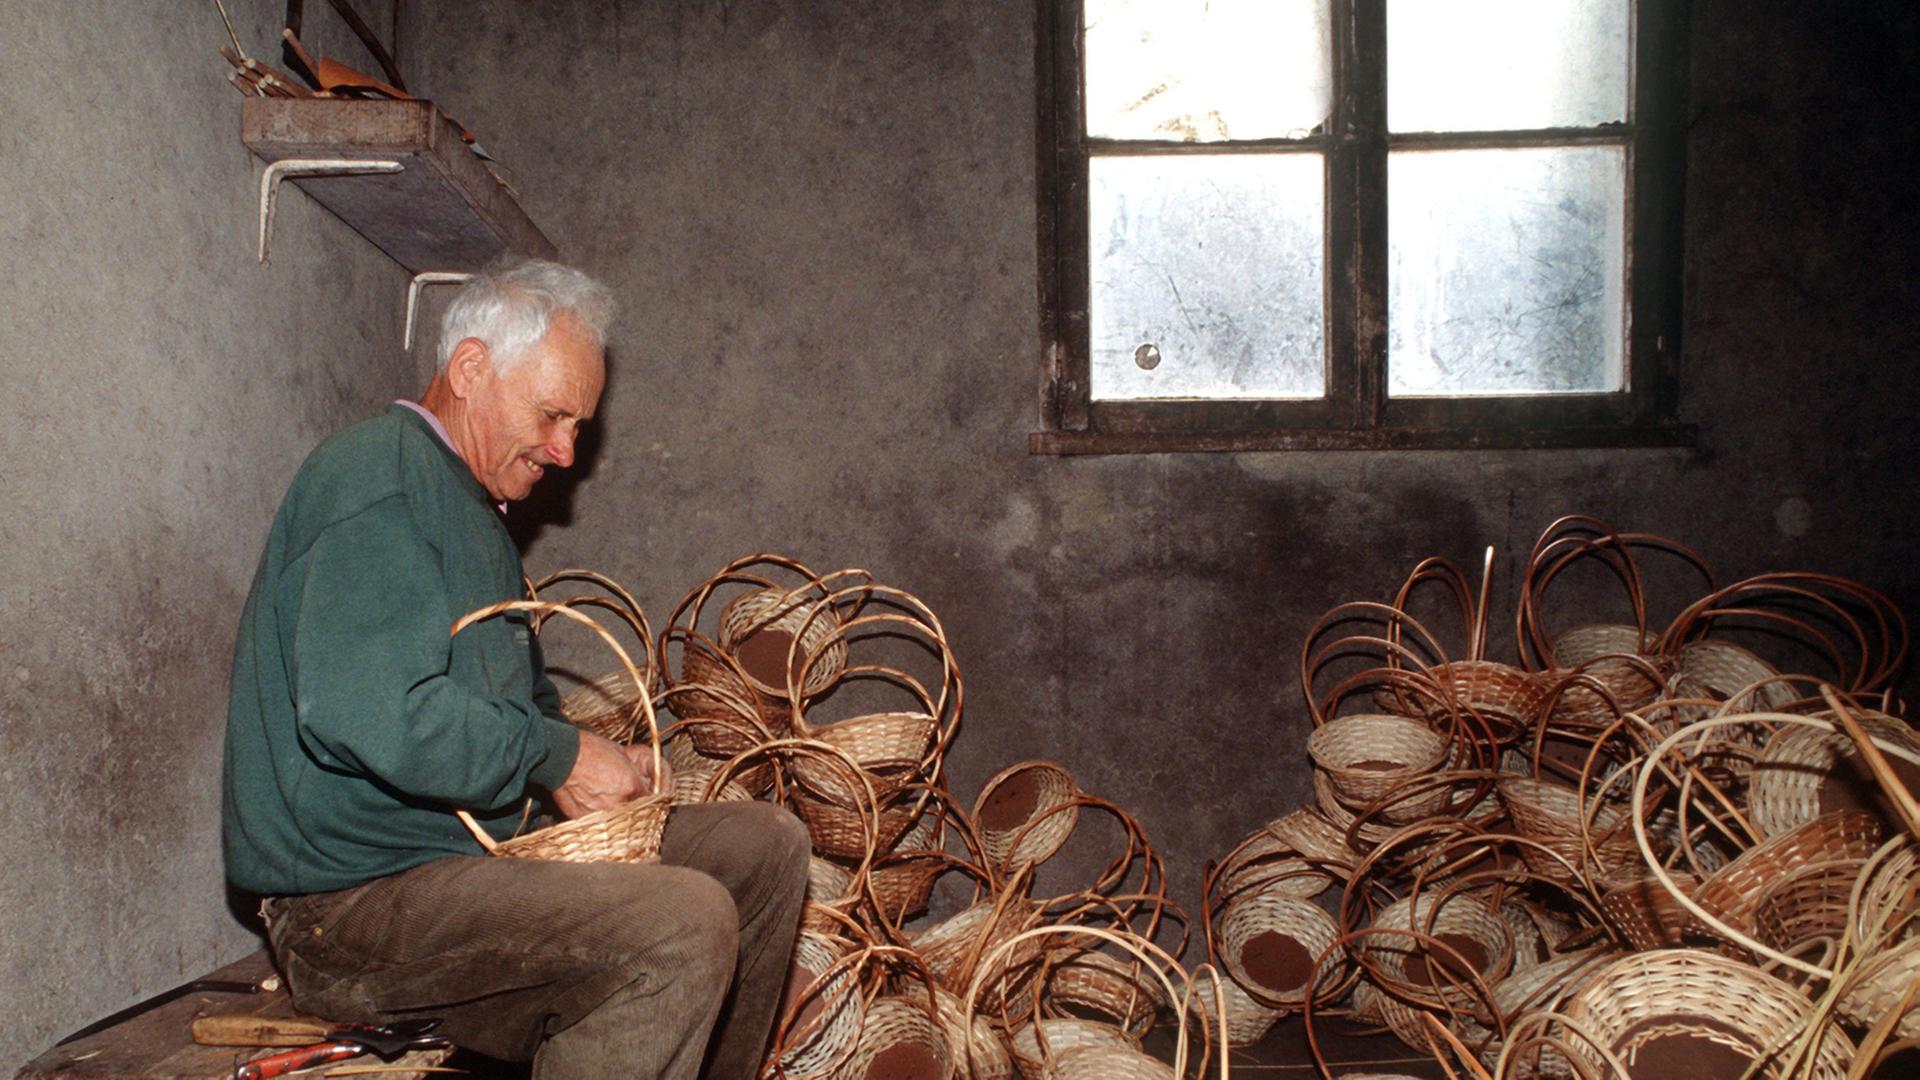 Ein Korbflechter bei der Arbeit im portugiesischen Camacha, aufgenommen 1998. Etwa 800 Arten von Flechtereien werden in der Stadt Camacha produziert.